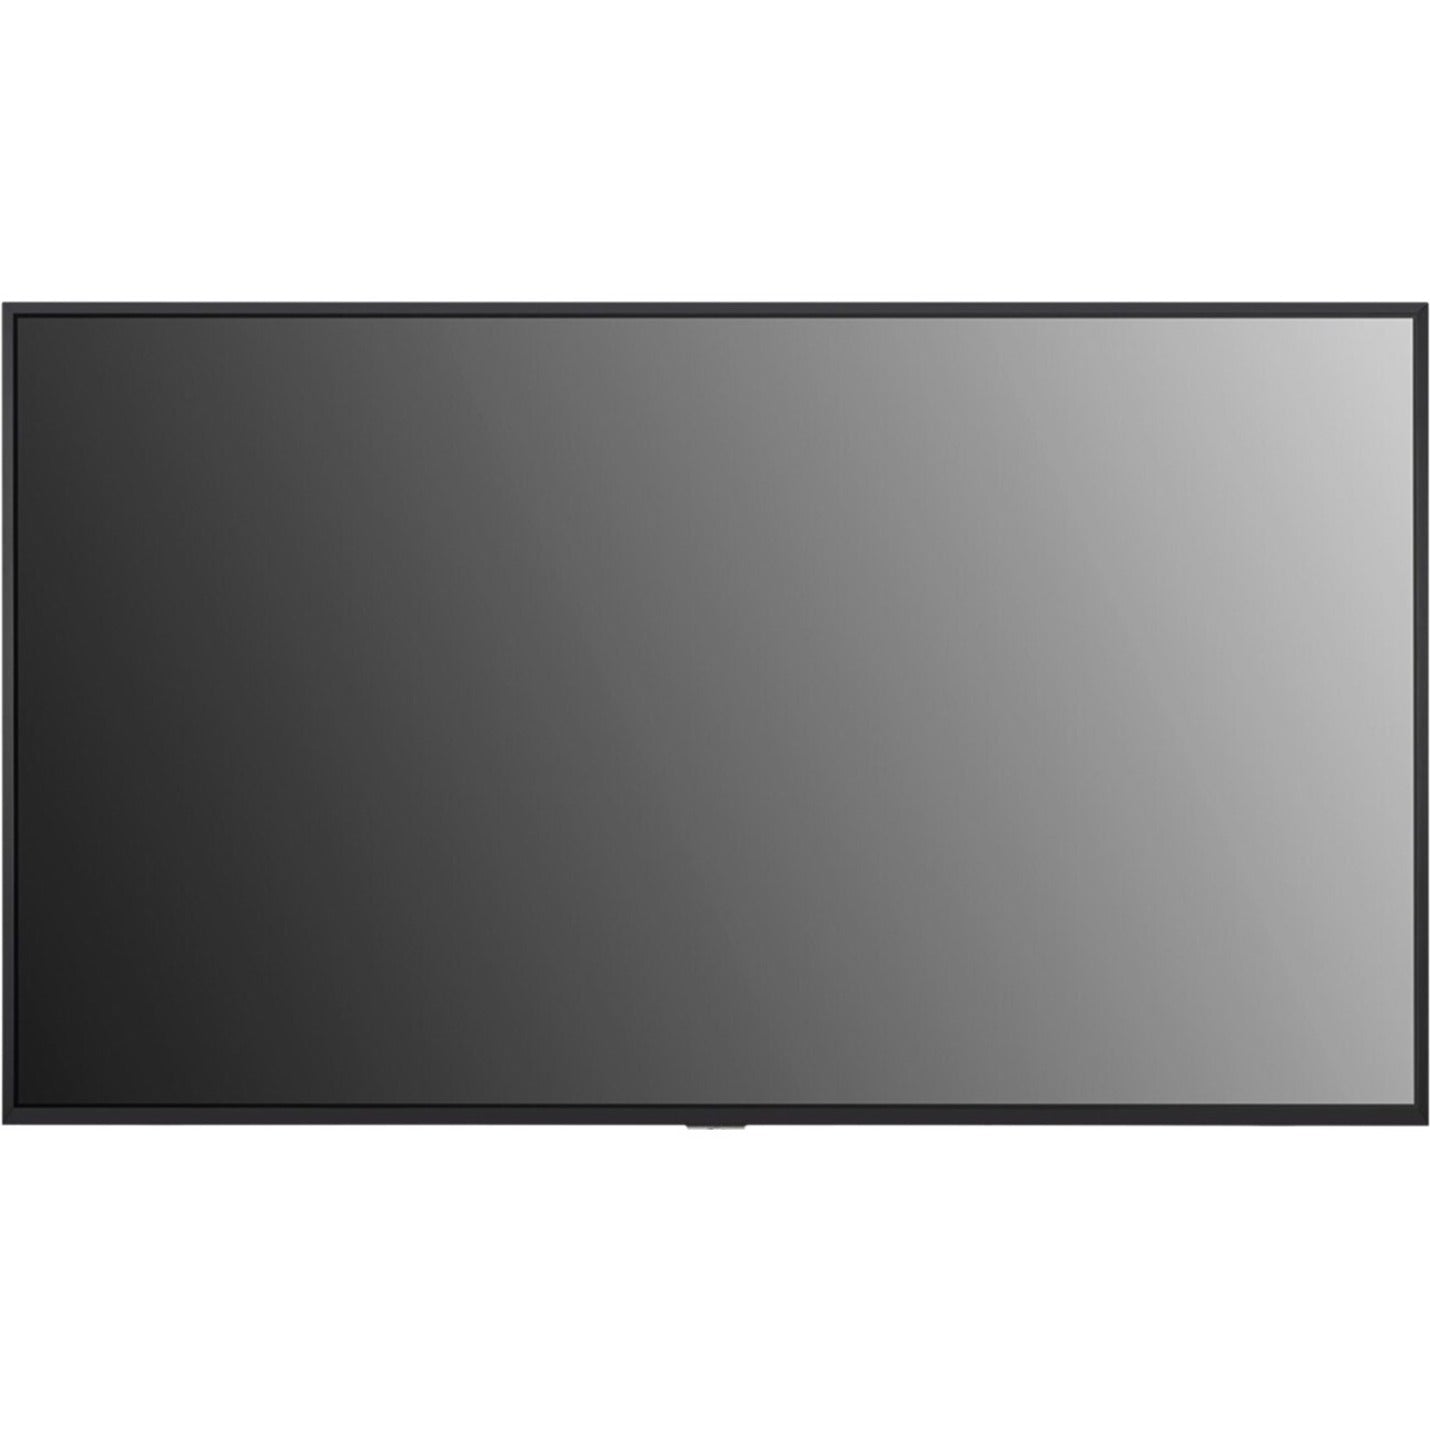 LG 49UM3DG-B Digital Signage Display, 49" LCD, 4K UHD, WebOS, 350 Nit Brightness, 10-bit Color Depth, 95% BT.709 Color Gamut